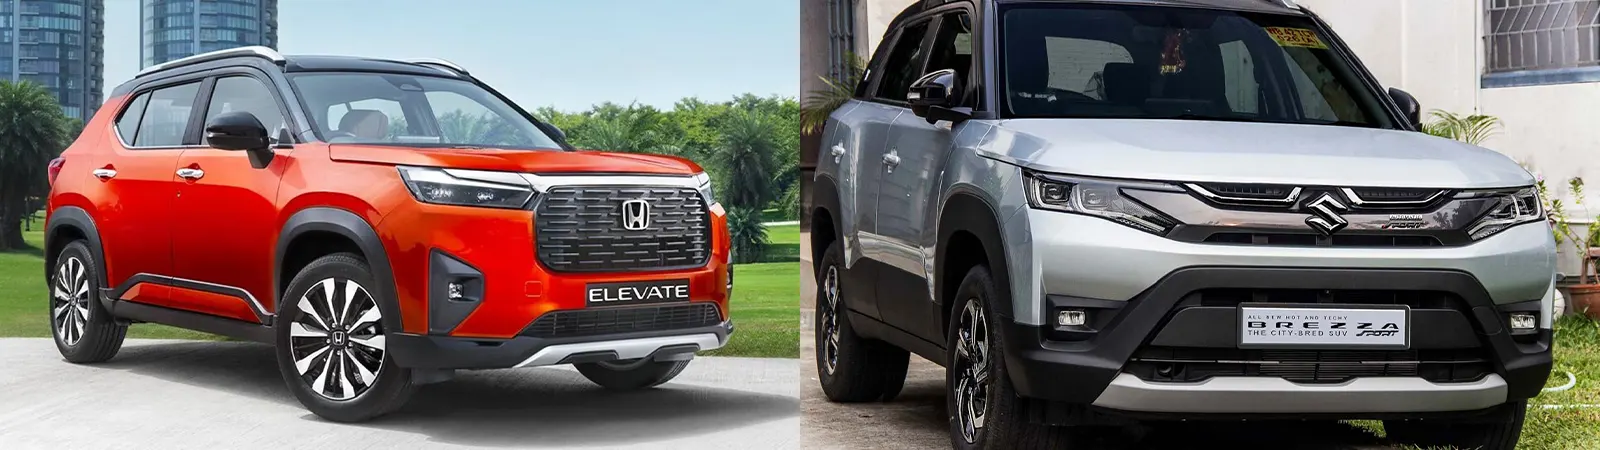 Brezza Vs Elevate : जानें Price के लिहाज से कौन ज़्यादा Better है - Honda Elevate या Maruti Suzuki Brezza?